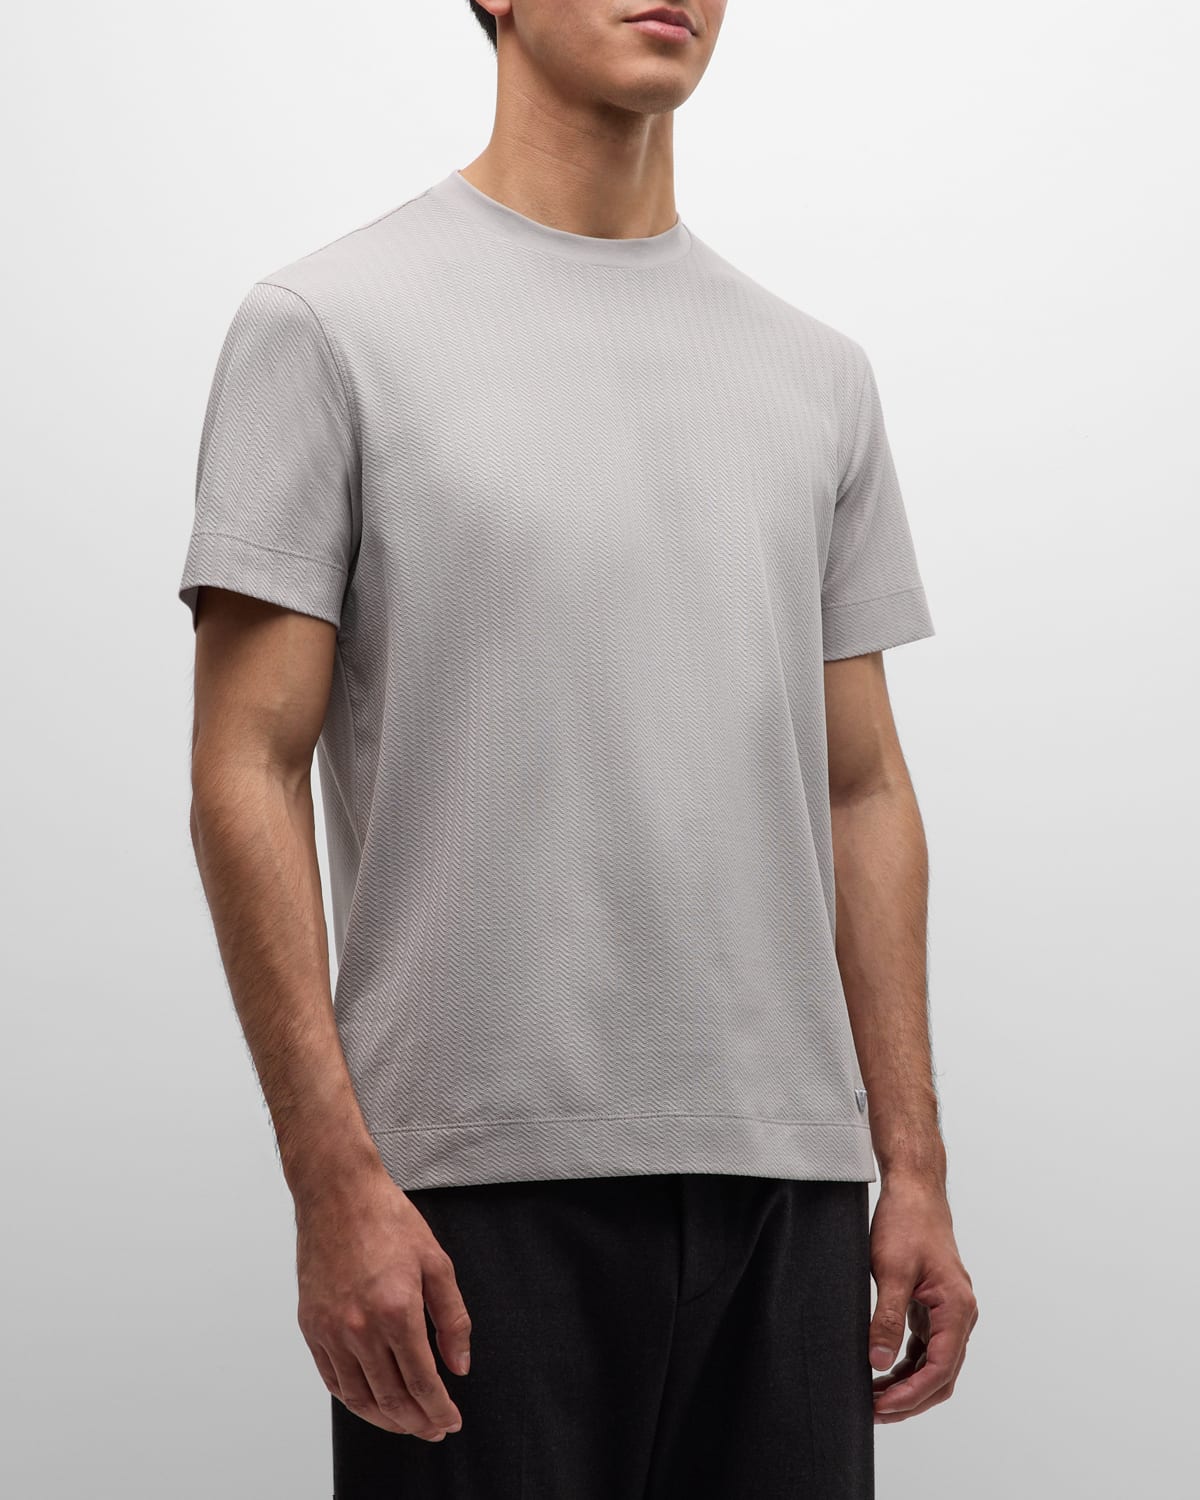 Emporio Armani Men's Cotton Jacquard Crewneck T-shirt In Multi